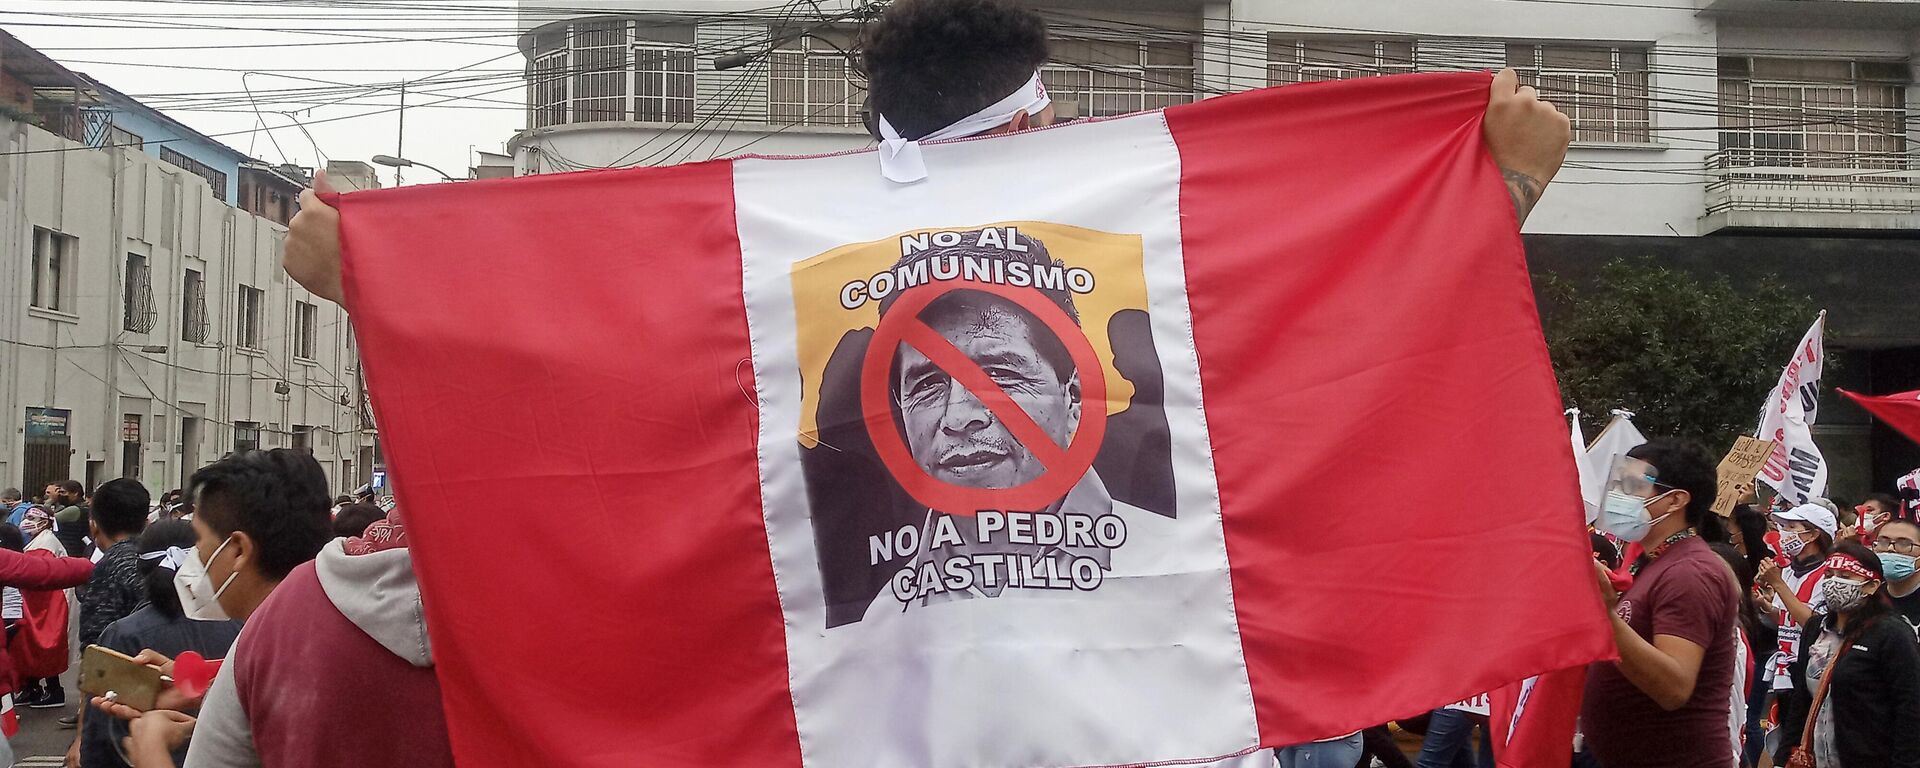 Marcha contra el comunismo y Castillo en Lima - Sputnik Mundo, 1920, 21.07.2021